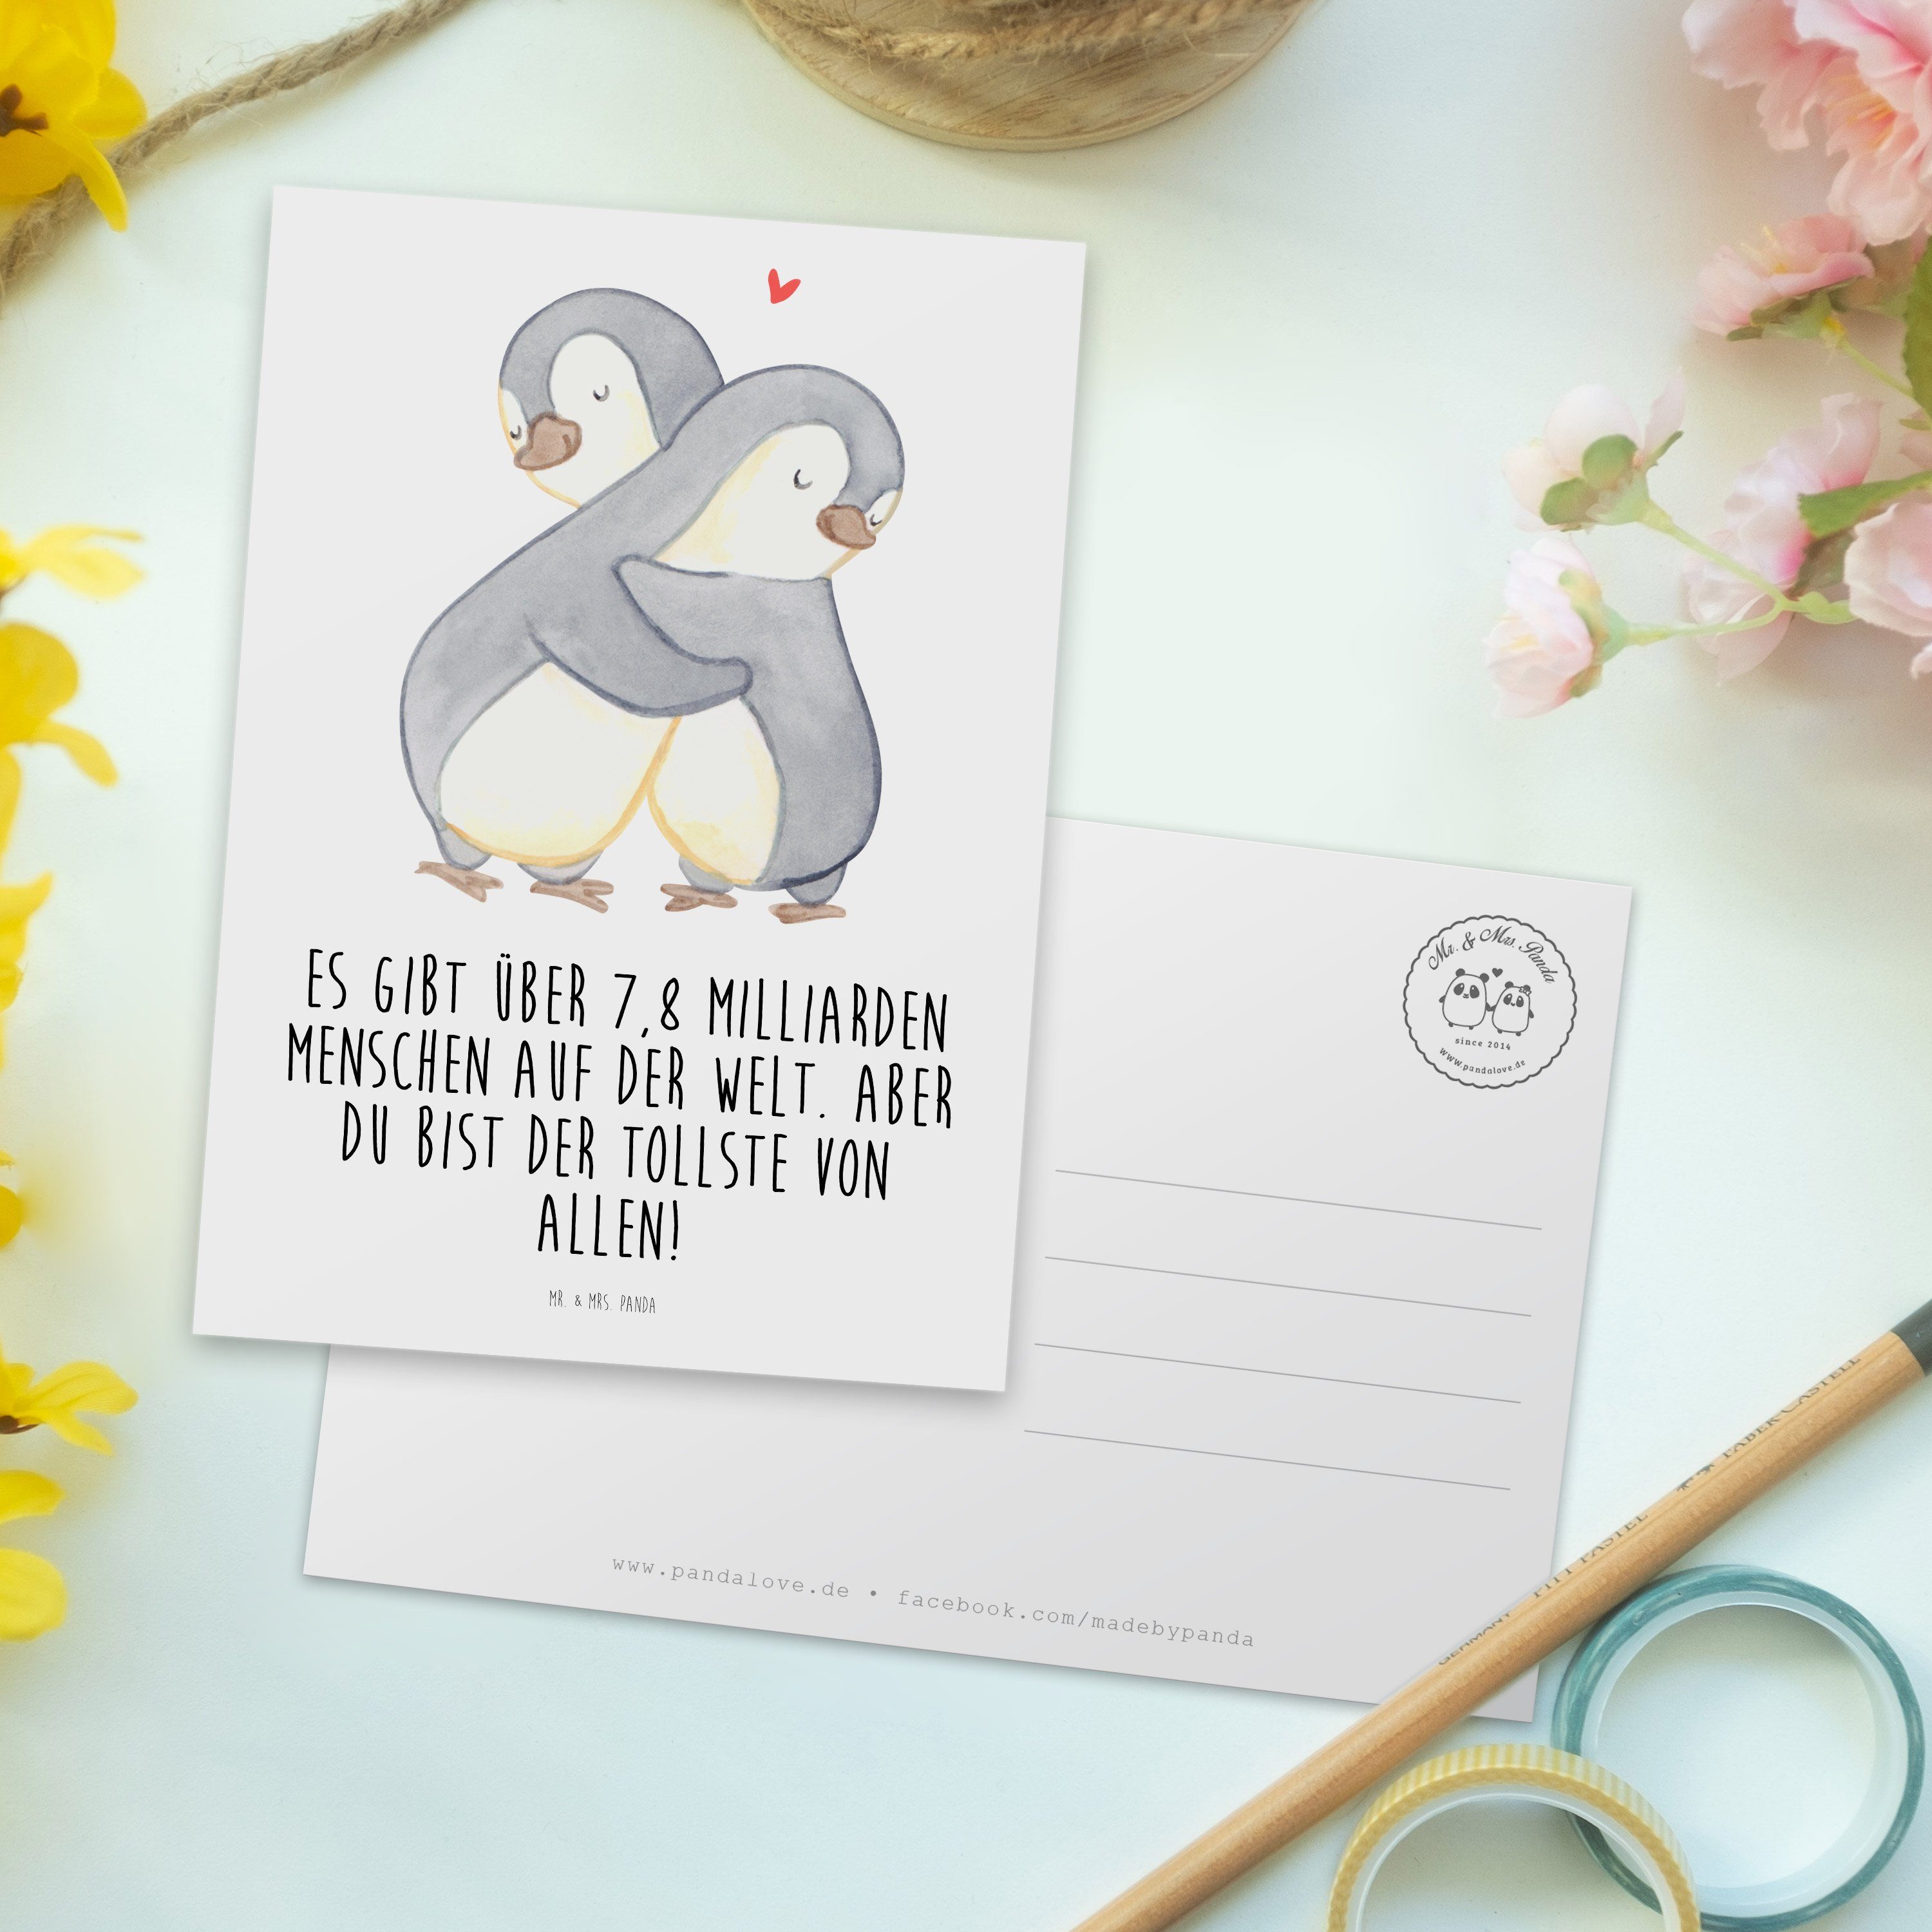 Mr. & Mrs. Panda Postkarte Dankeskarte, fü Pinguine Einladungskarte, - Weiß Geschenk, Kuscheln 